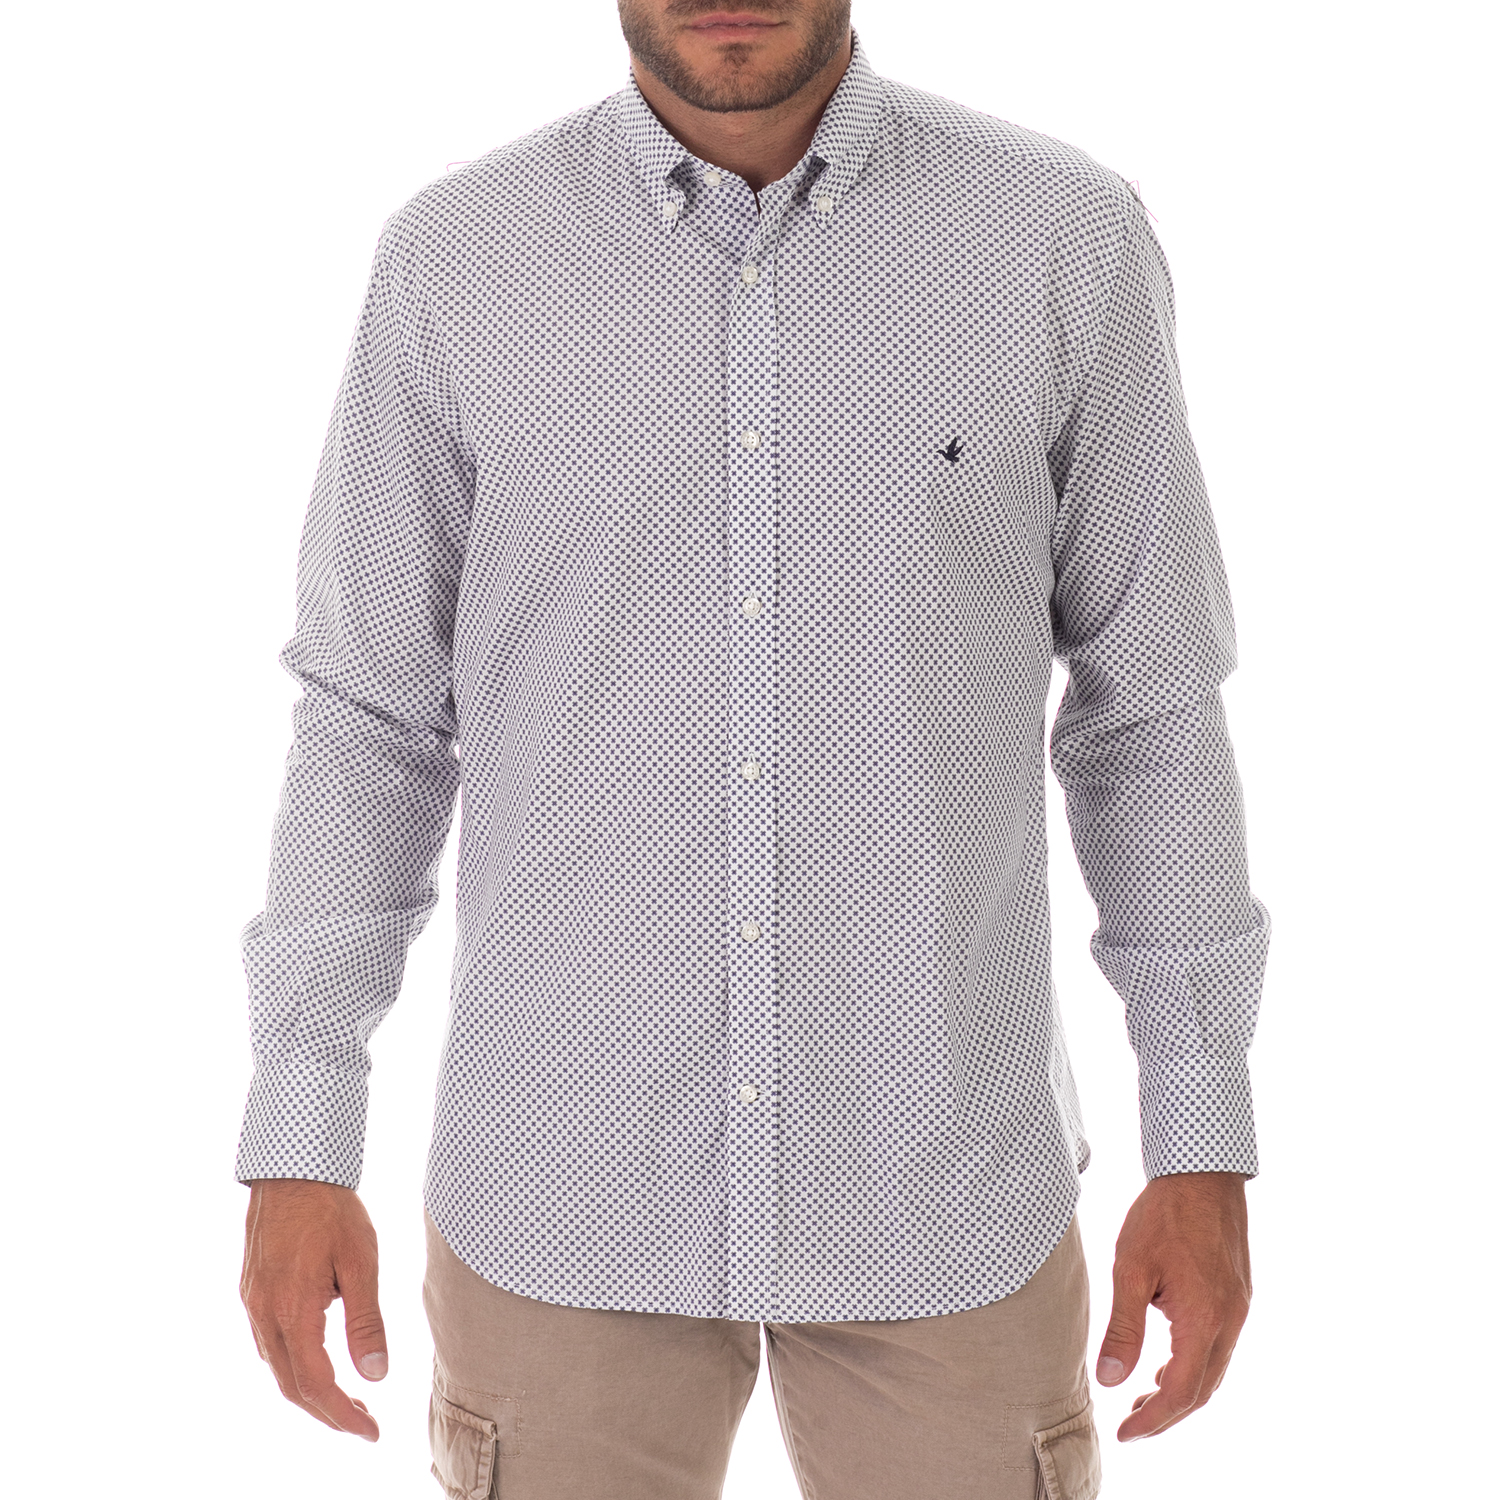 Ανδρικά/Ρούχα/Πουκάμισα/Μακρυμάνικα BROOKSFIELD - Ανδρικό πουκάμισο BROOKSFIELD REGULAR FIT λευκό